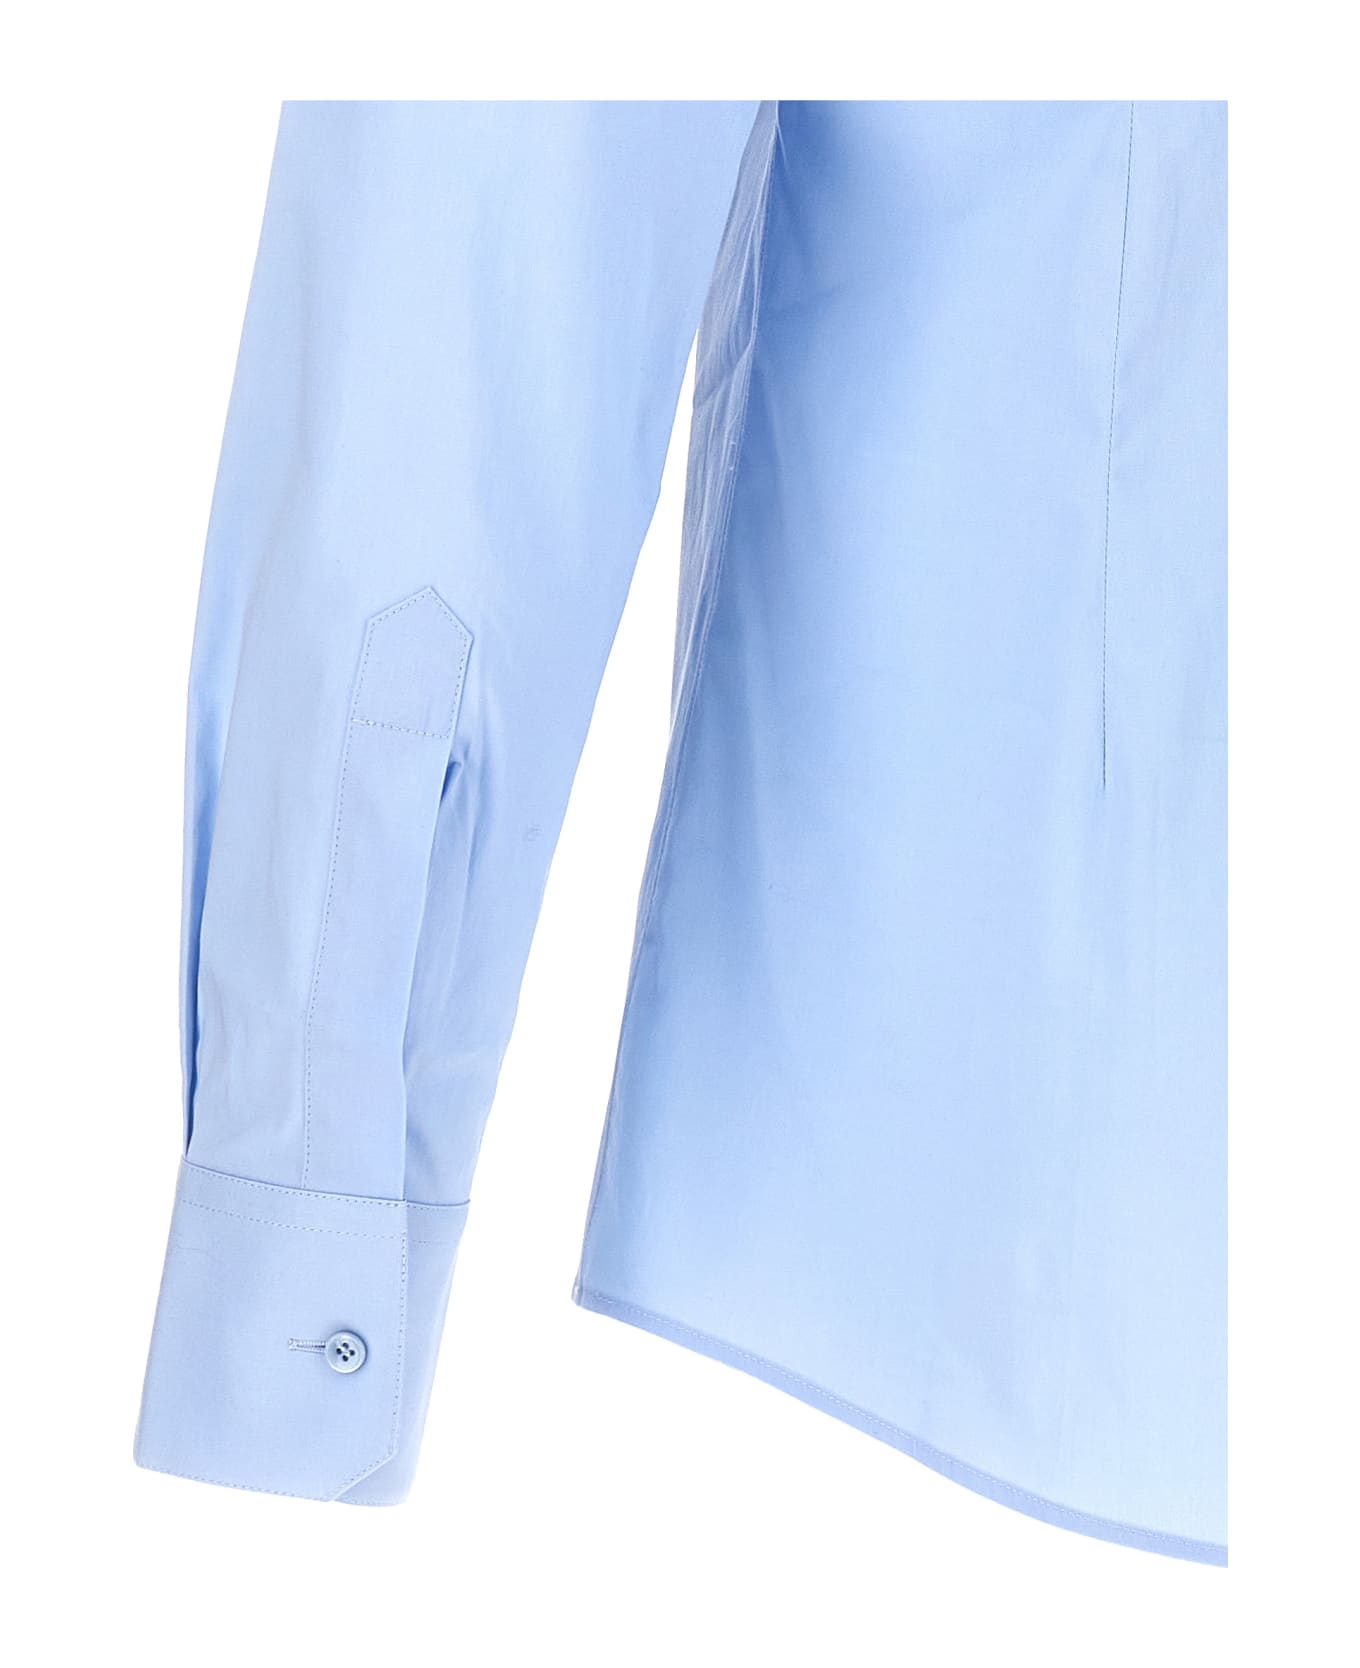 Dolce & Gabbana Long-sleeved Shirt - Light Blue